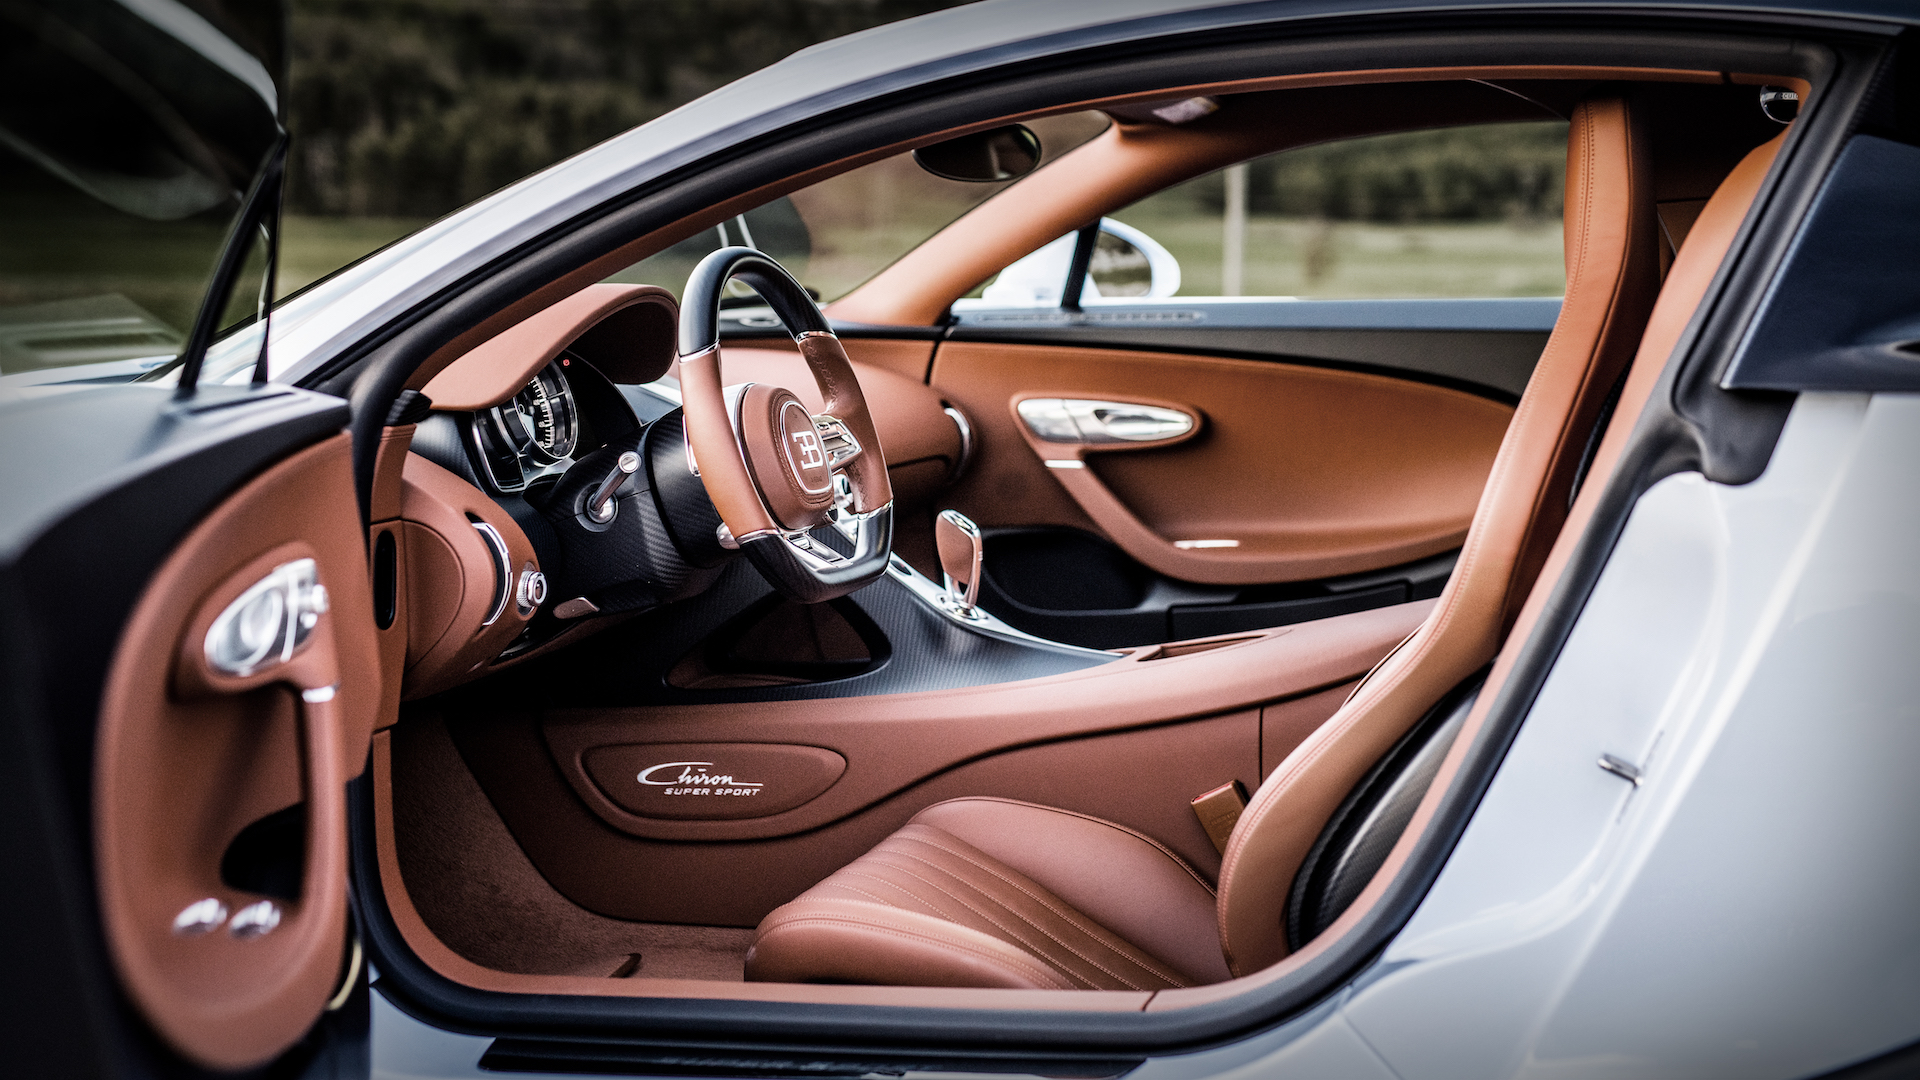 Siêu phẩm Bugatti Chiron Super Sport ra mắt: Giới hạn 60 xe, giá 3,9 triệu USD - Ảnh 5.